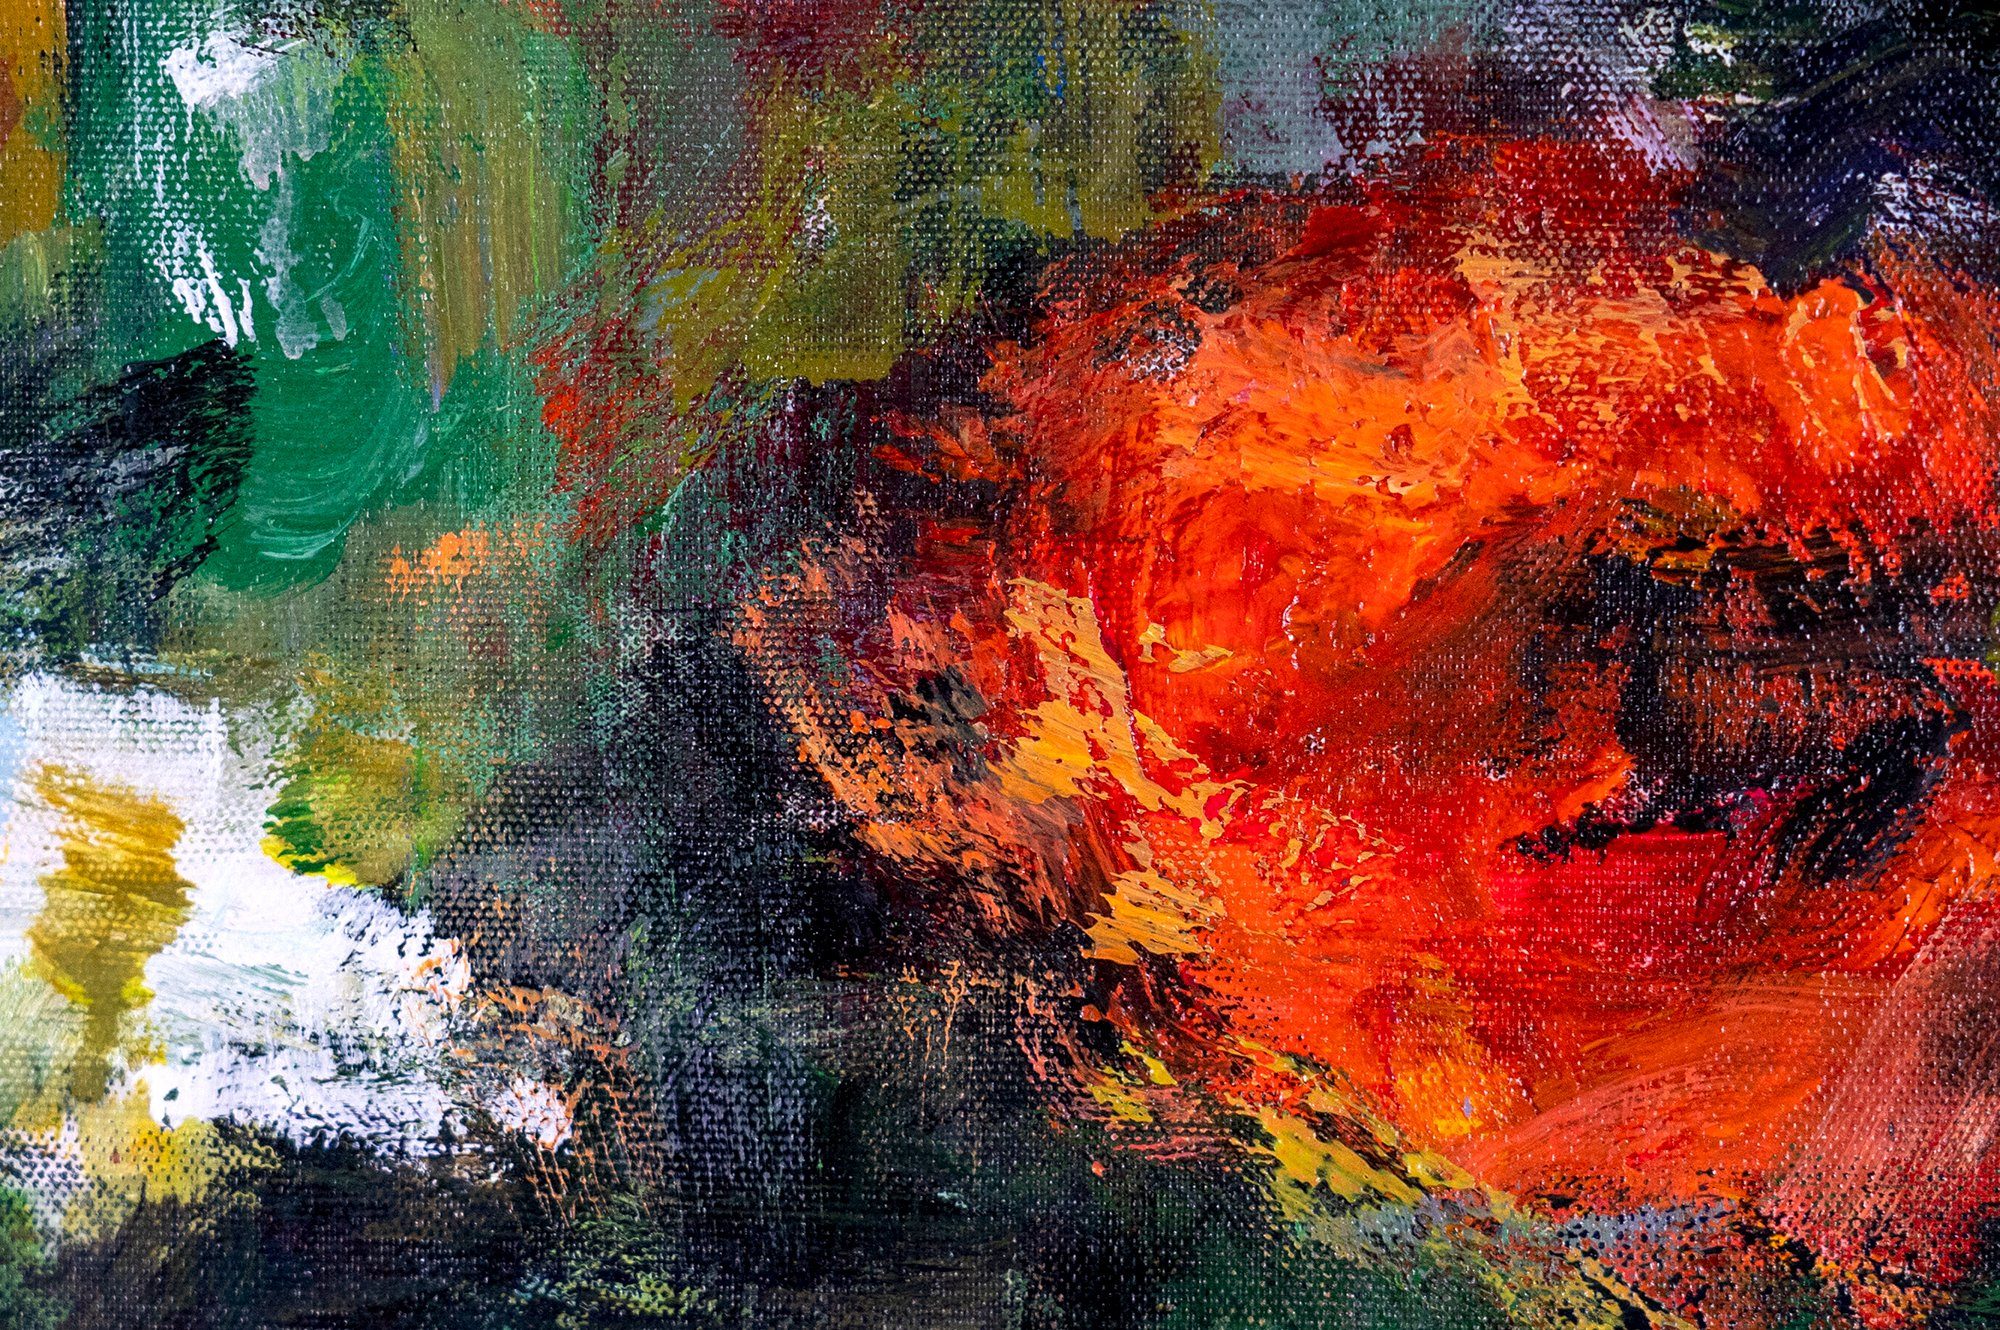 YS-Art Gemälde Blühende Weiten, Blumen Rot Rahmen Mit in